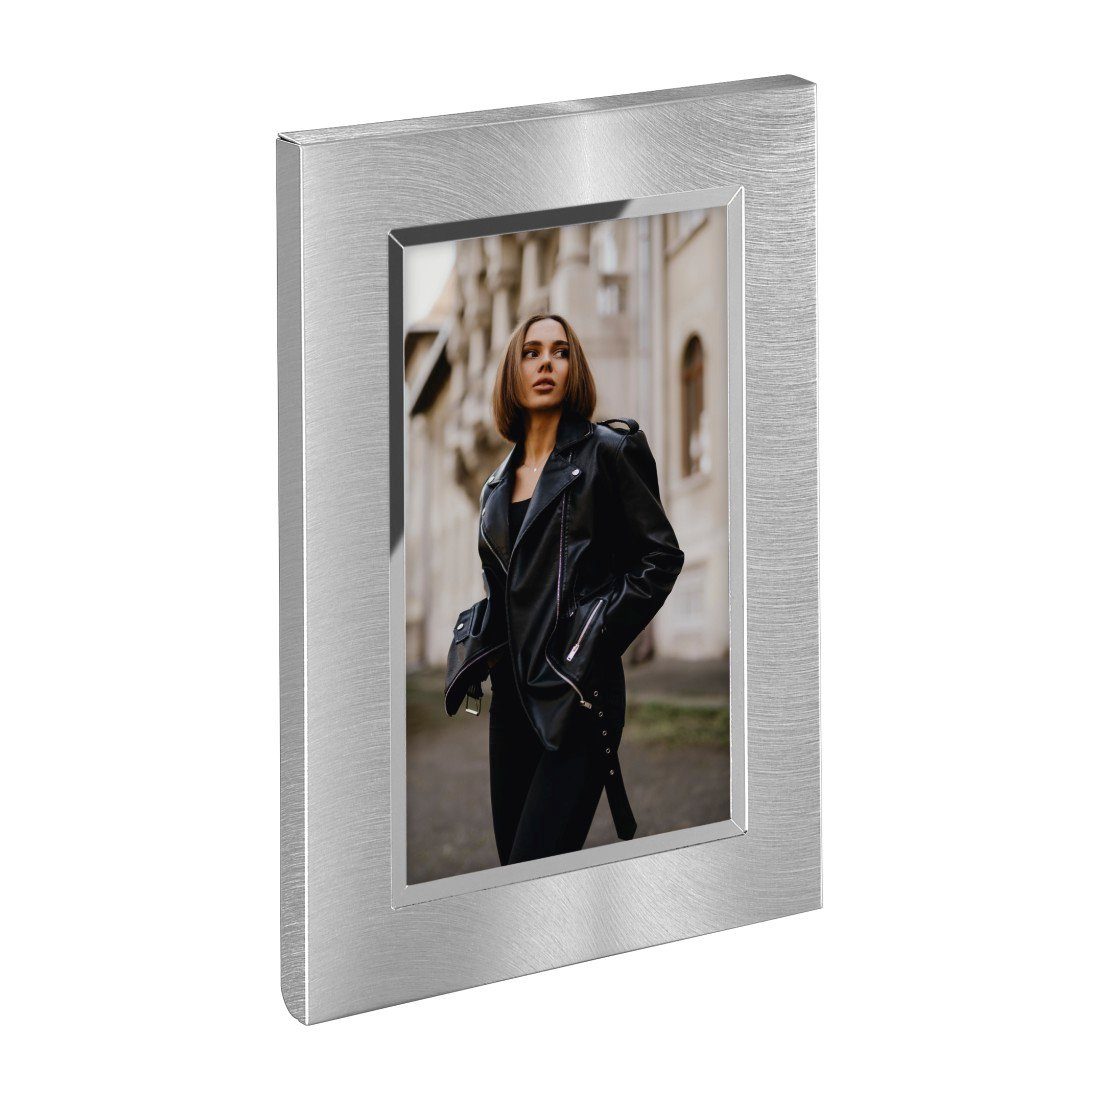 Hama Portraitrahmen cm, aufstellbar, Bilder für Porträtrahmen 1 13x18 aufhängbar, silber